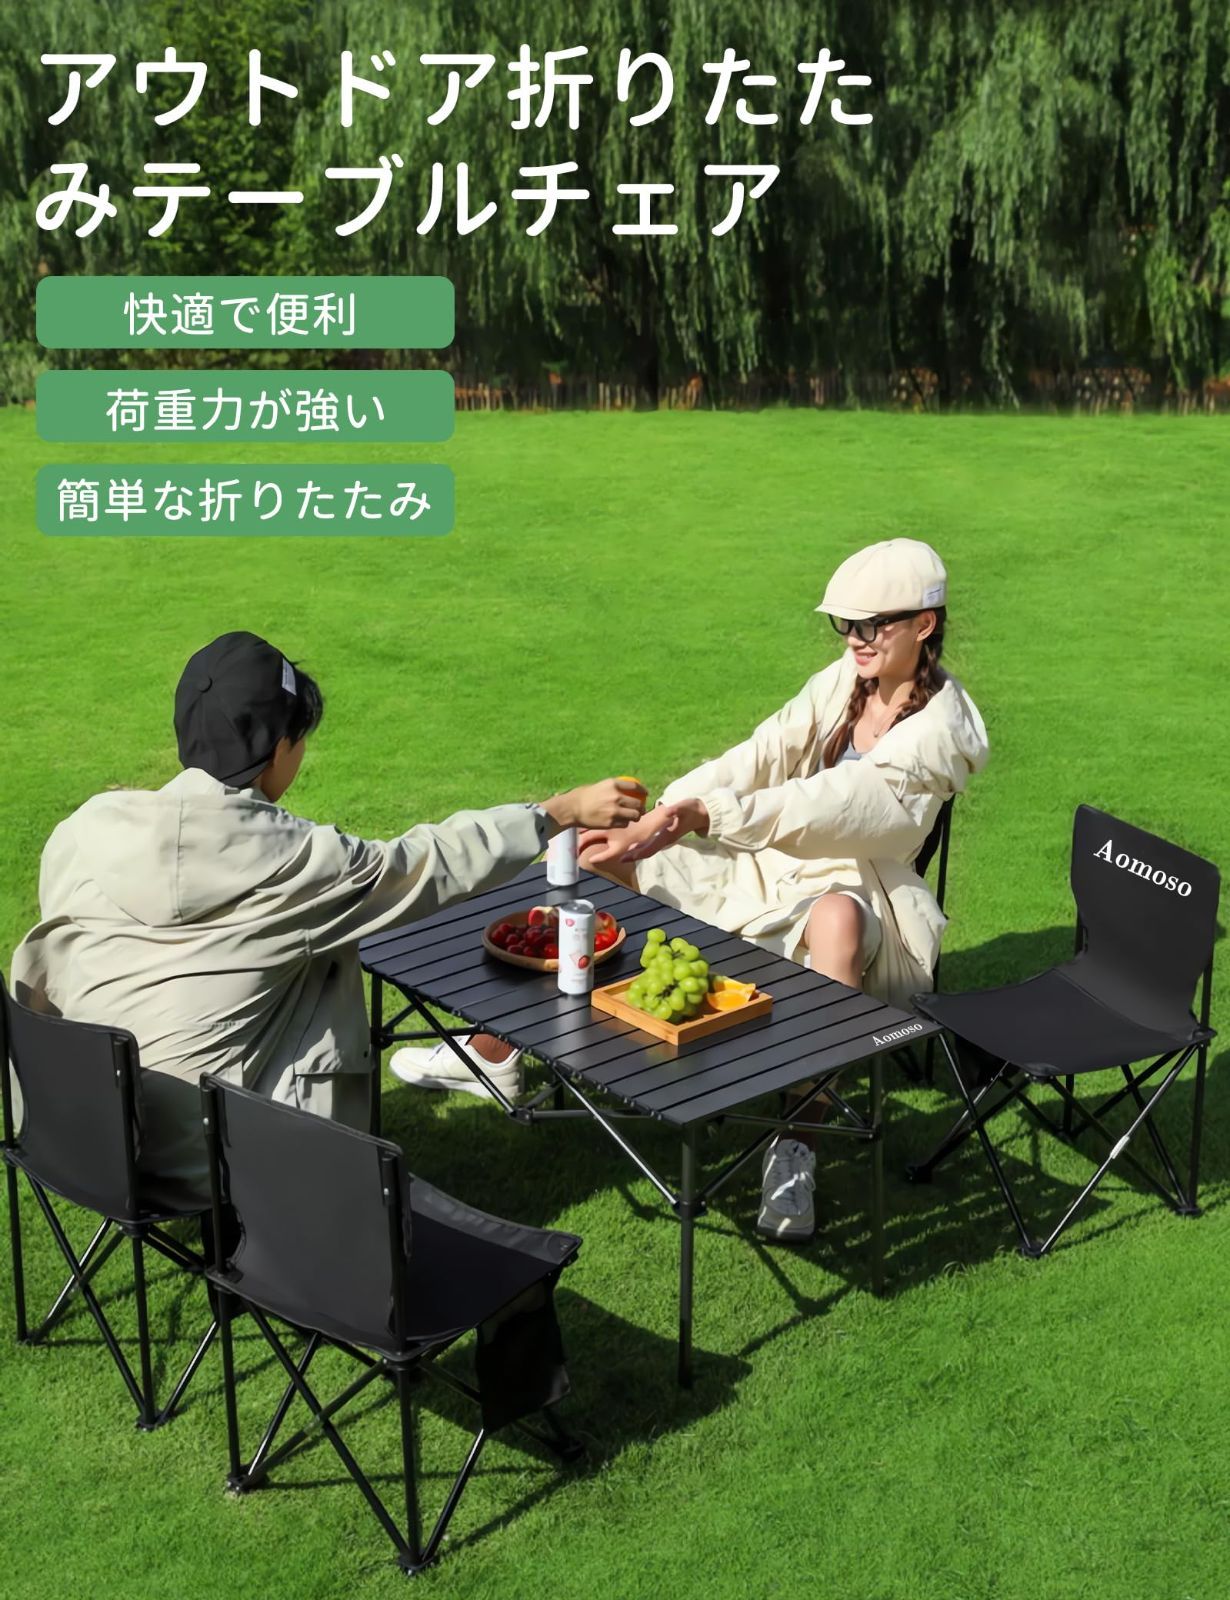 特価商品】アルミテーブル椅子 7点セット ピクニック ベンチセット